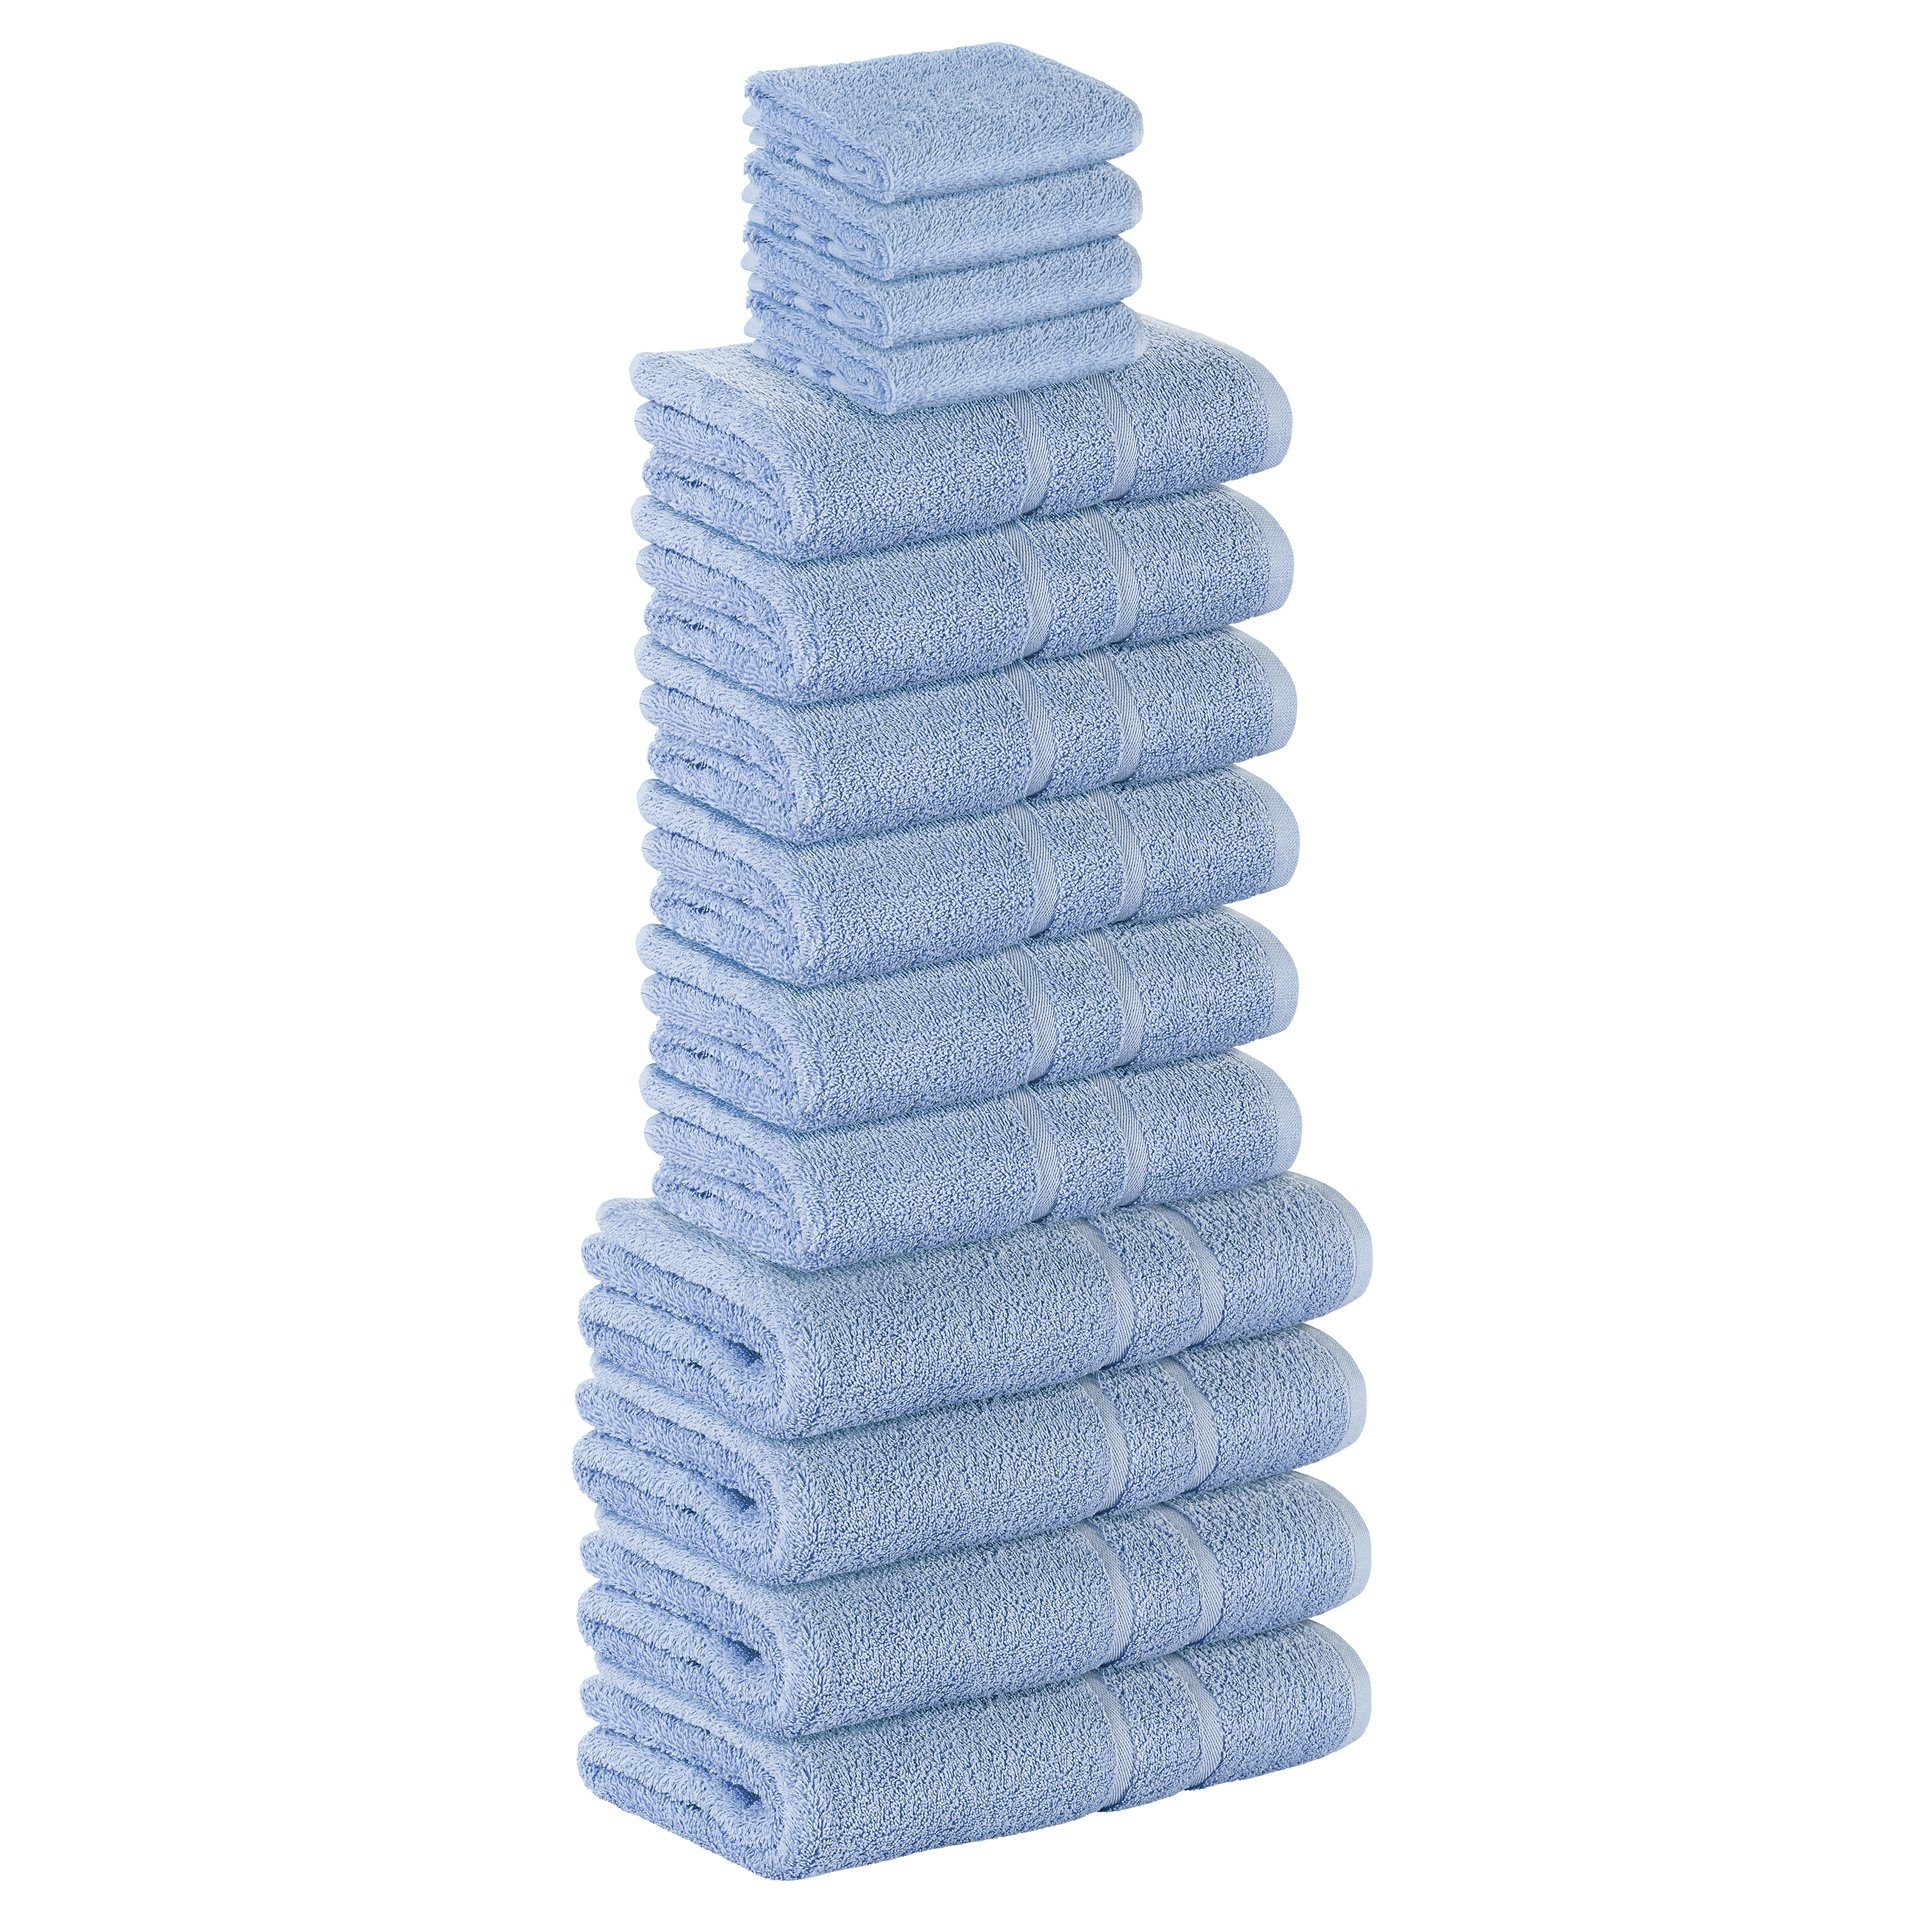 StickandShine Handtuch Set 4x Gästehandtuch 6x Handtücher 4x Duschtücher als SET in verschiedenen Farben (14 Teilig) 100% Baumwolle 500 GSM Frottee 14er Handtuch Pack, 100% Baumwolle 500 GSM Hellblau